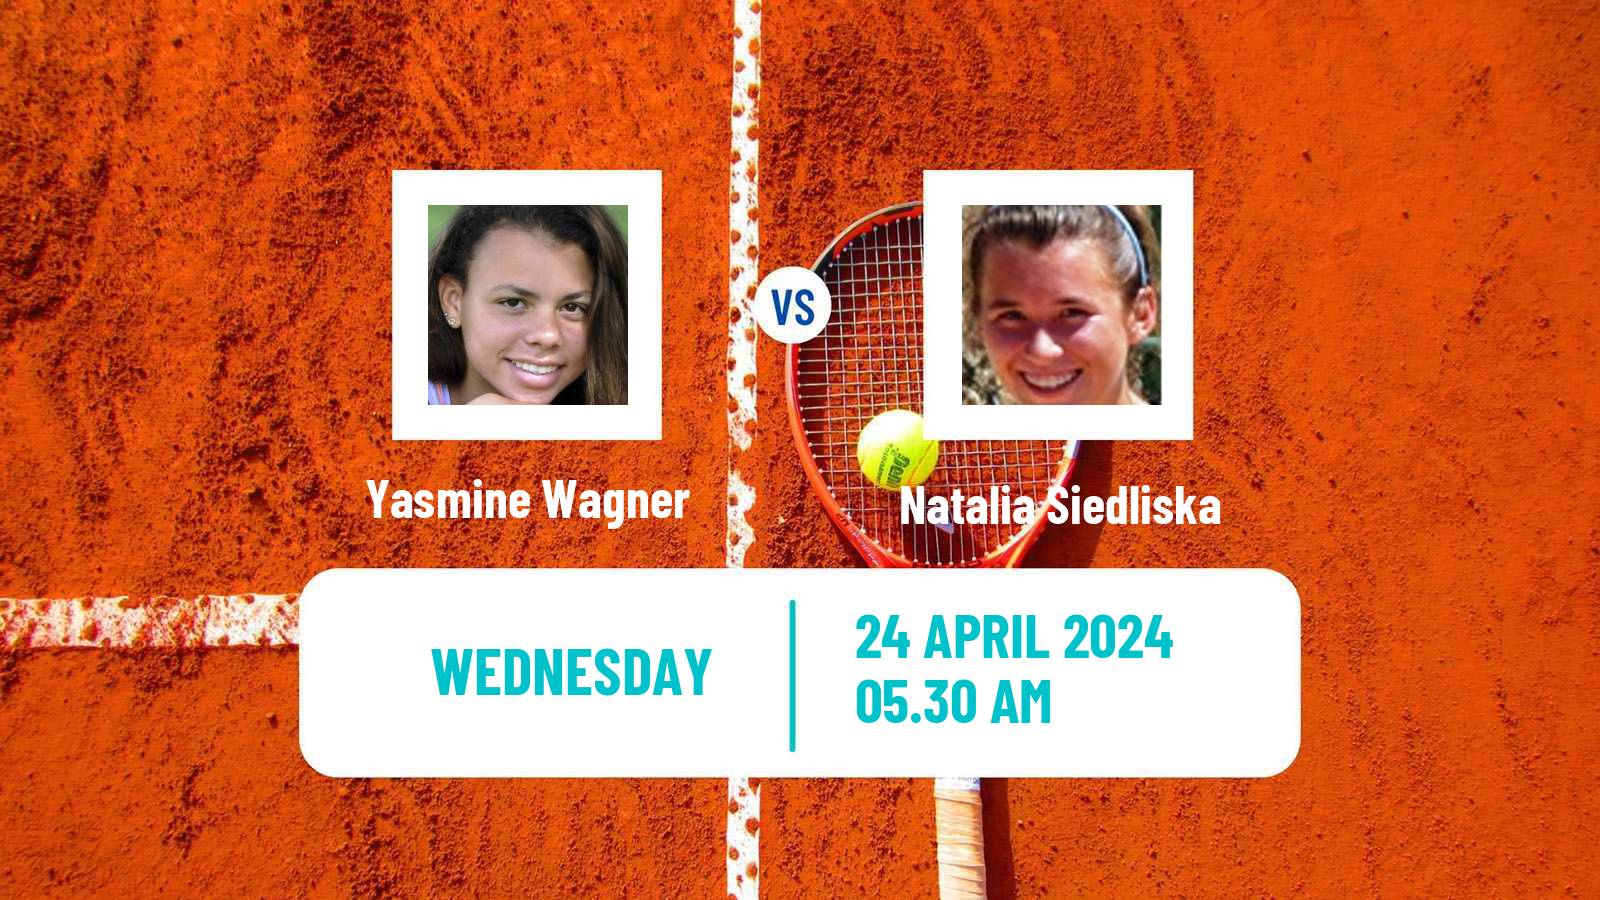 Tennis ITF W15 Antalya 11 Women Yasmine Wagner - Natalia Siedliska